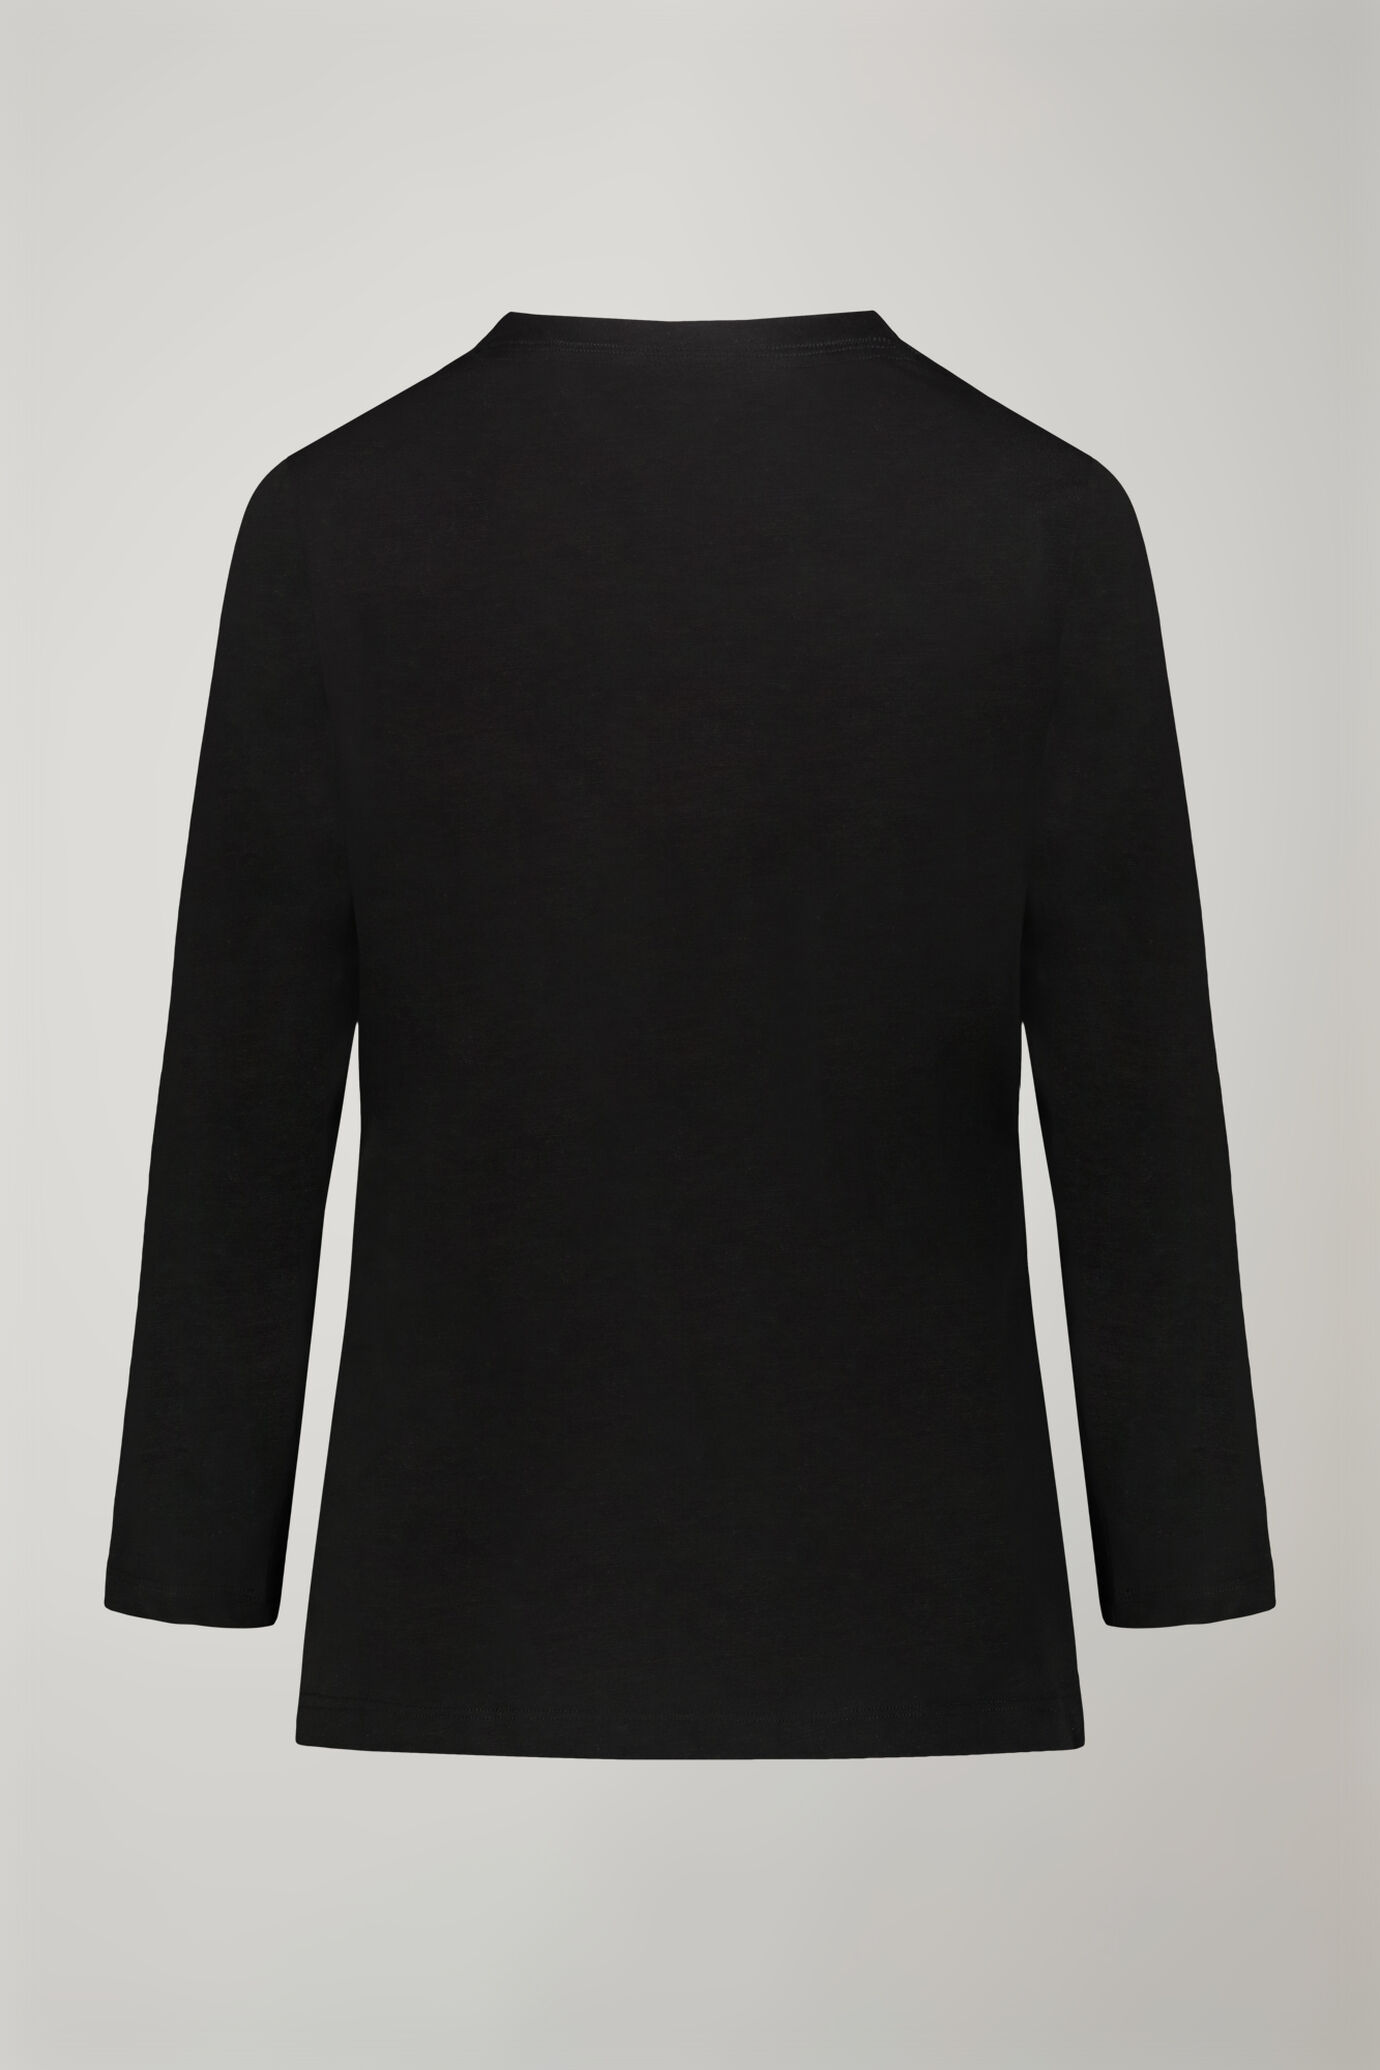 Damen-T-Shirt mit V-Ausschnitt aus 100 % Baumwolle in normaler Passform image number 5